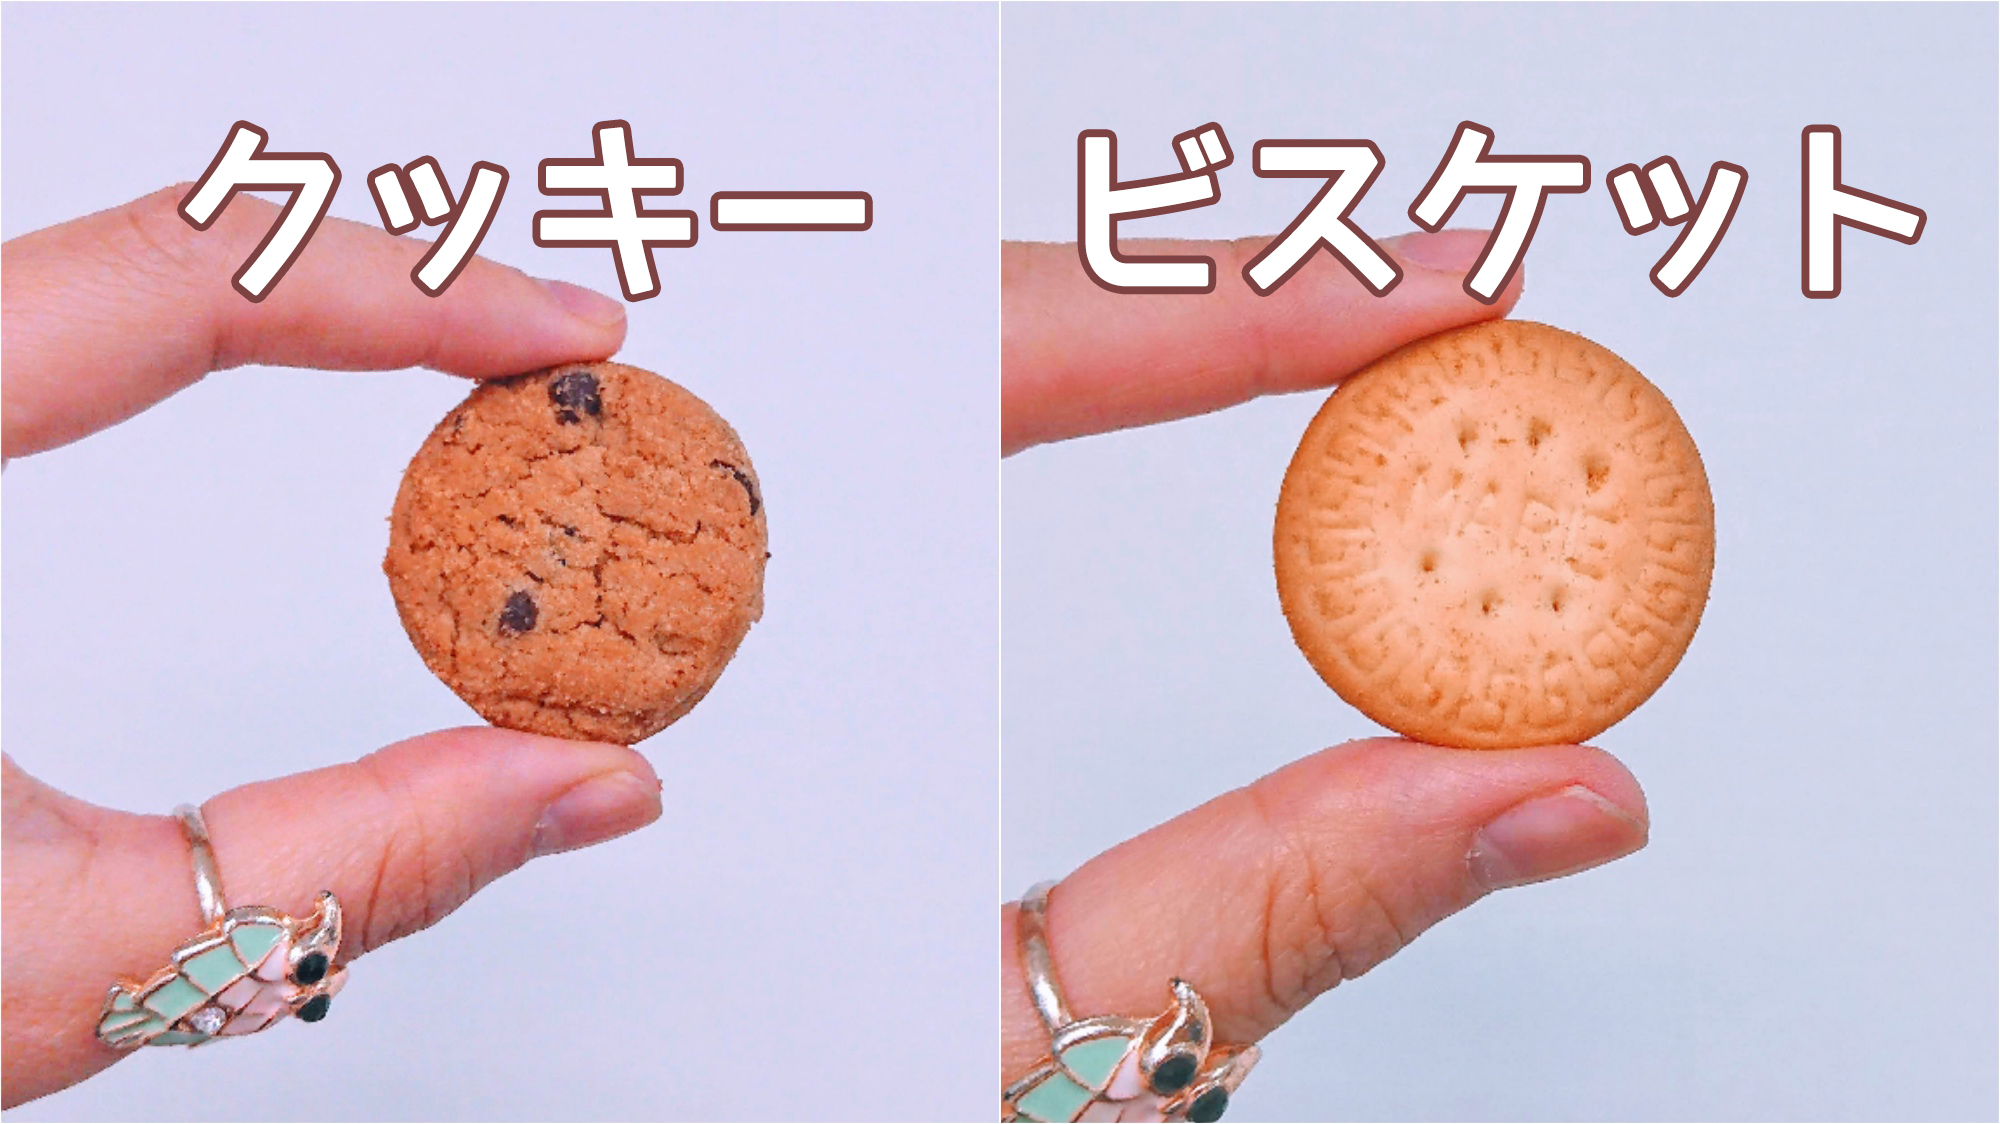 素朴な疑問 クッキーとビスケットの違いって何 調べてみたら日本と海外で違う食べ物になることも 19年3月10日 エキサイトニュース 2 2